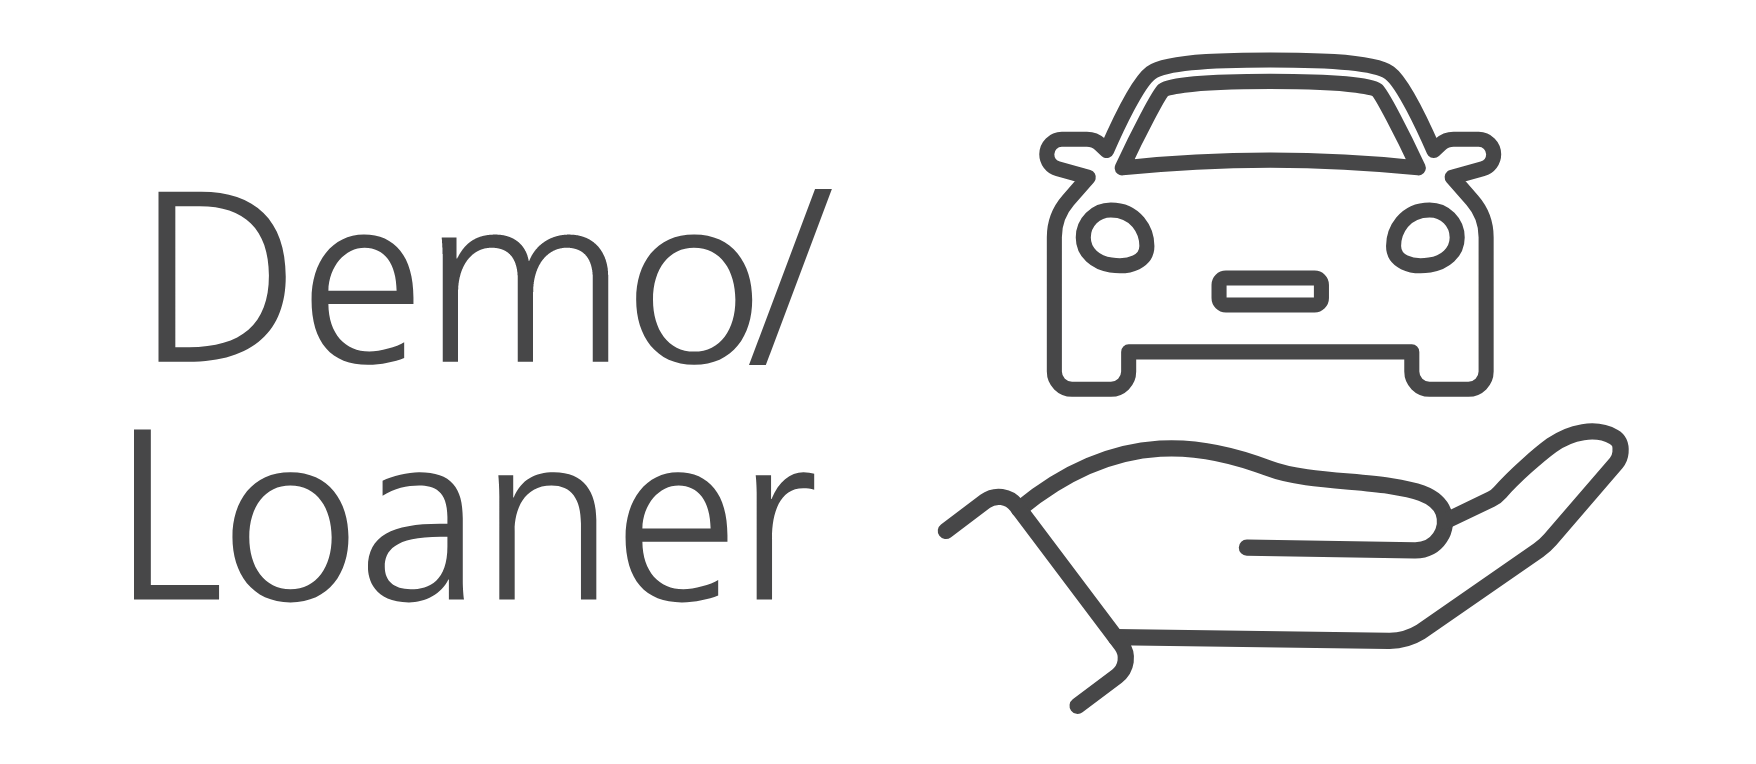 in transit logo